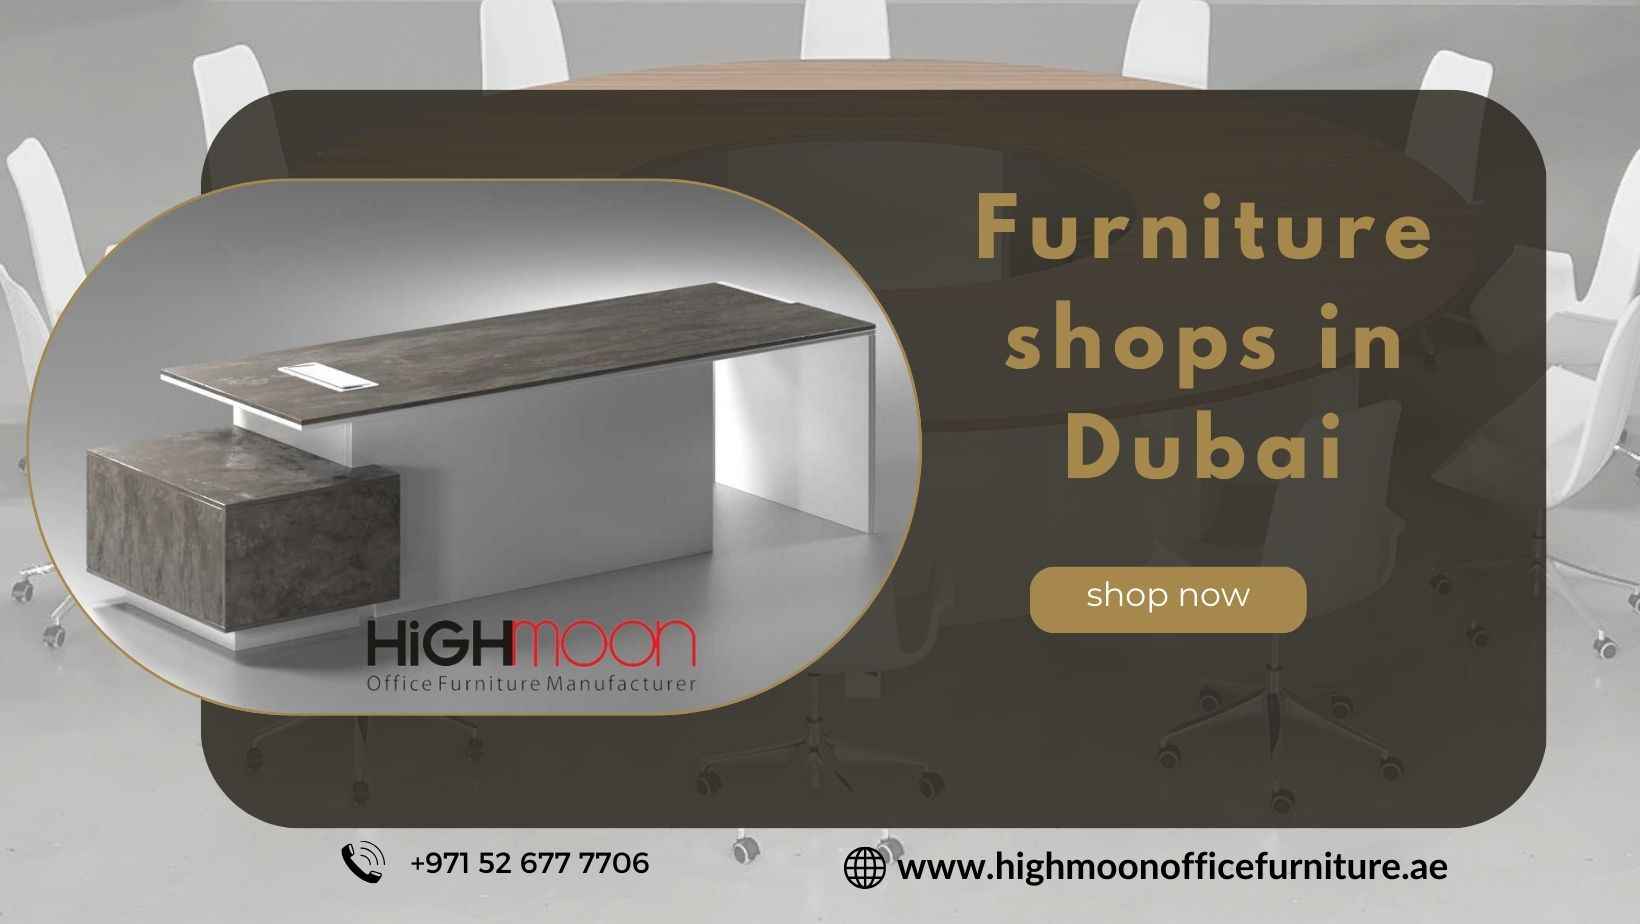 Furniture shops in Dubai